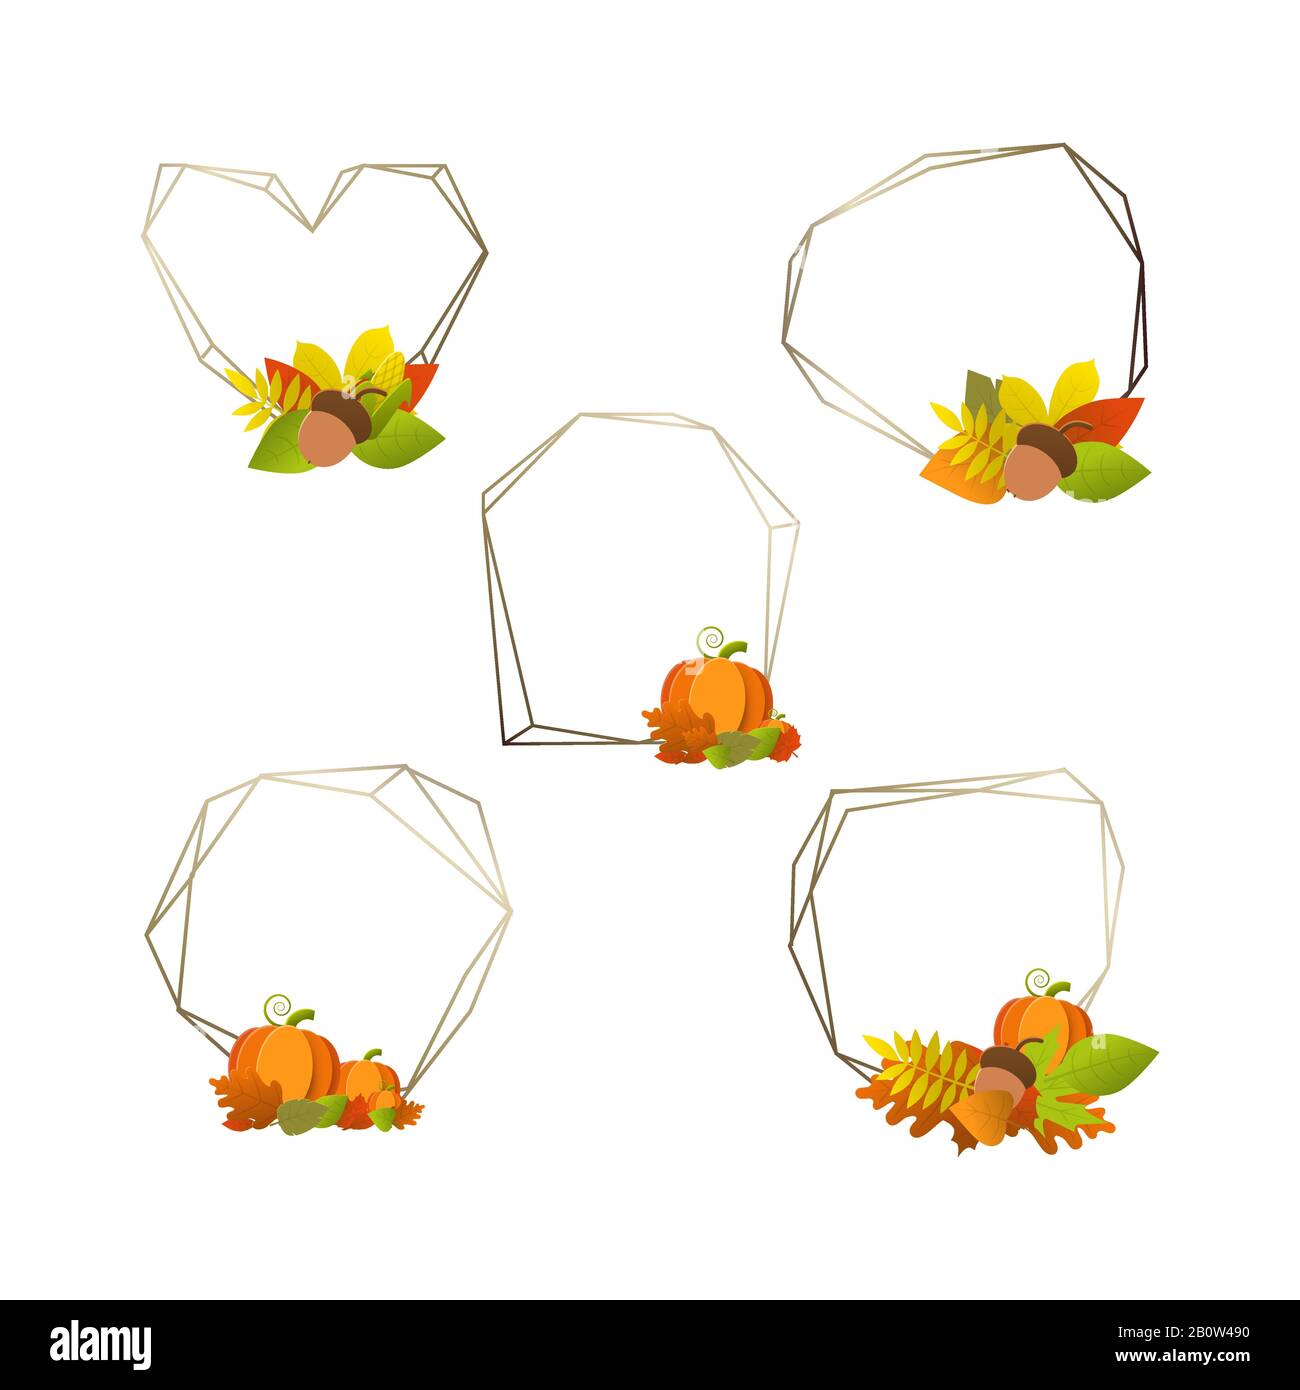 Jeu d'icônes vectorielles colorées pour feuilles d'automne Illustration de Vecteur